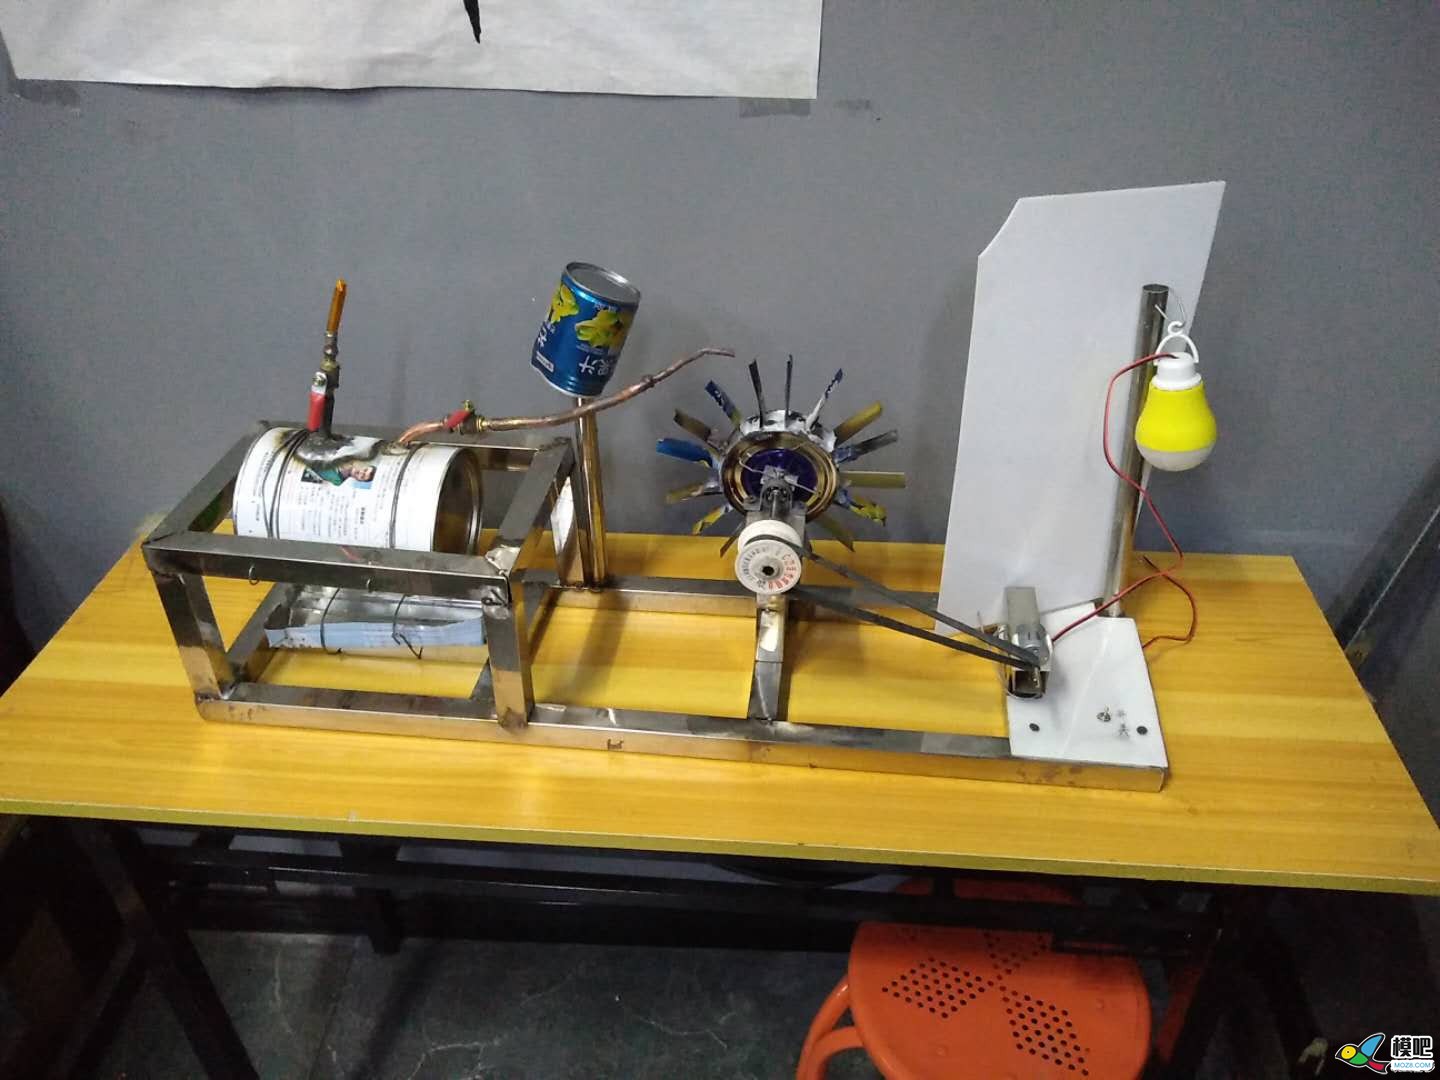 学校小实验竞赛------汽轮发电机制作。 电机 作者:耍流氓的小屁孩 7106 